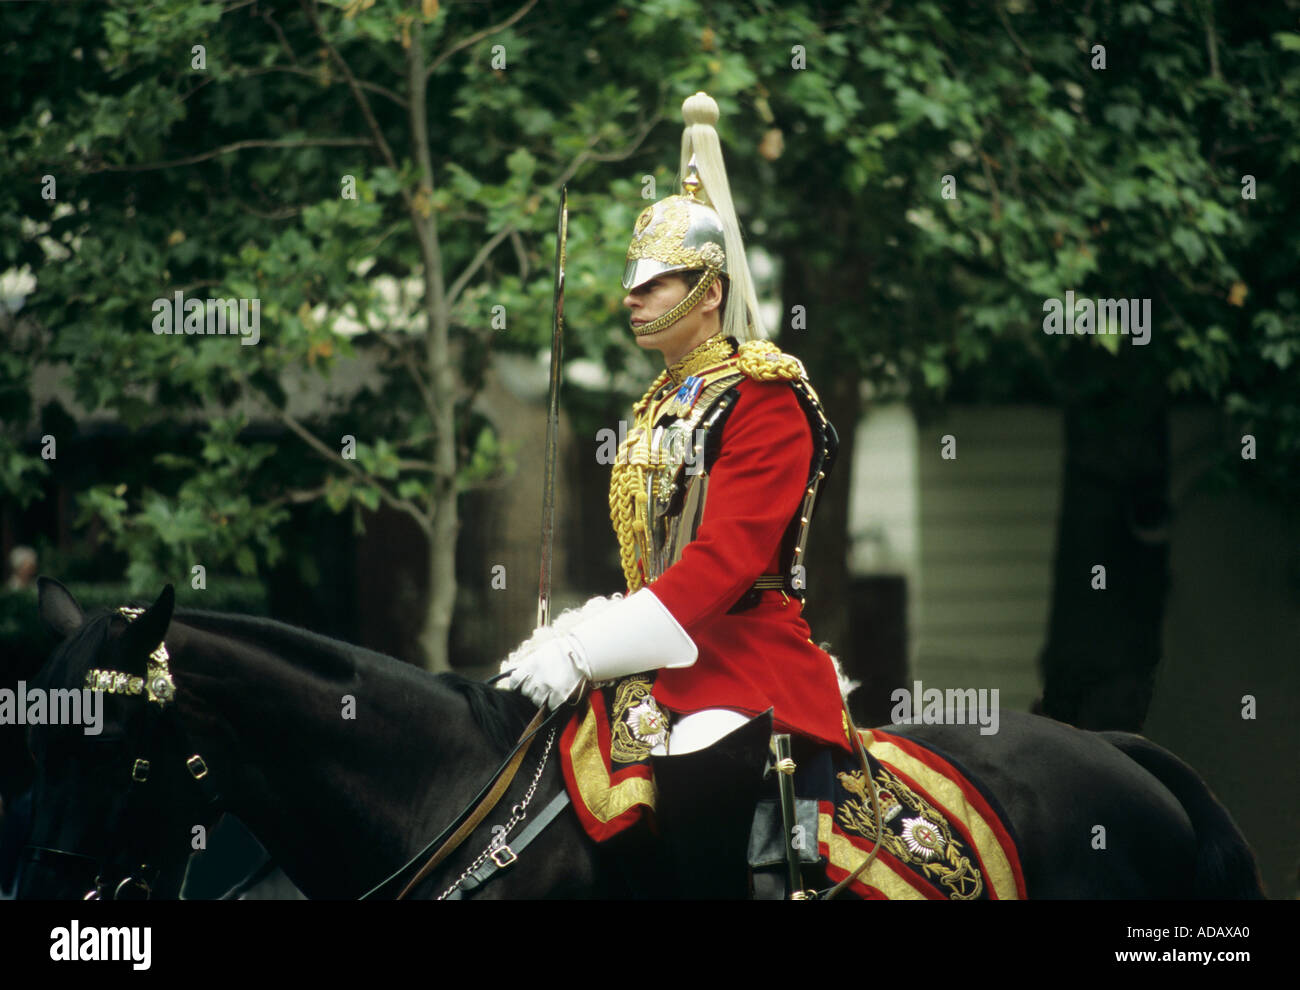 Membre de la Household Cavalry Londres Angleterre Royaume-Uni Banque D'Images